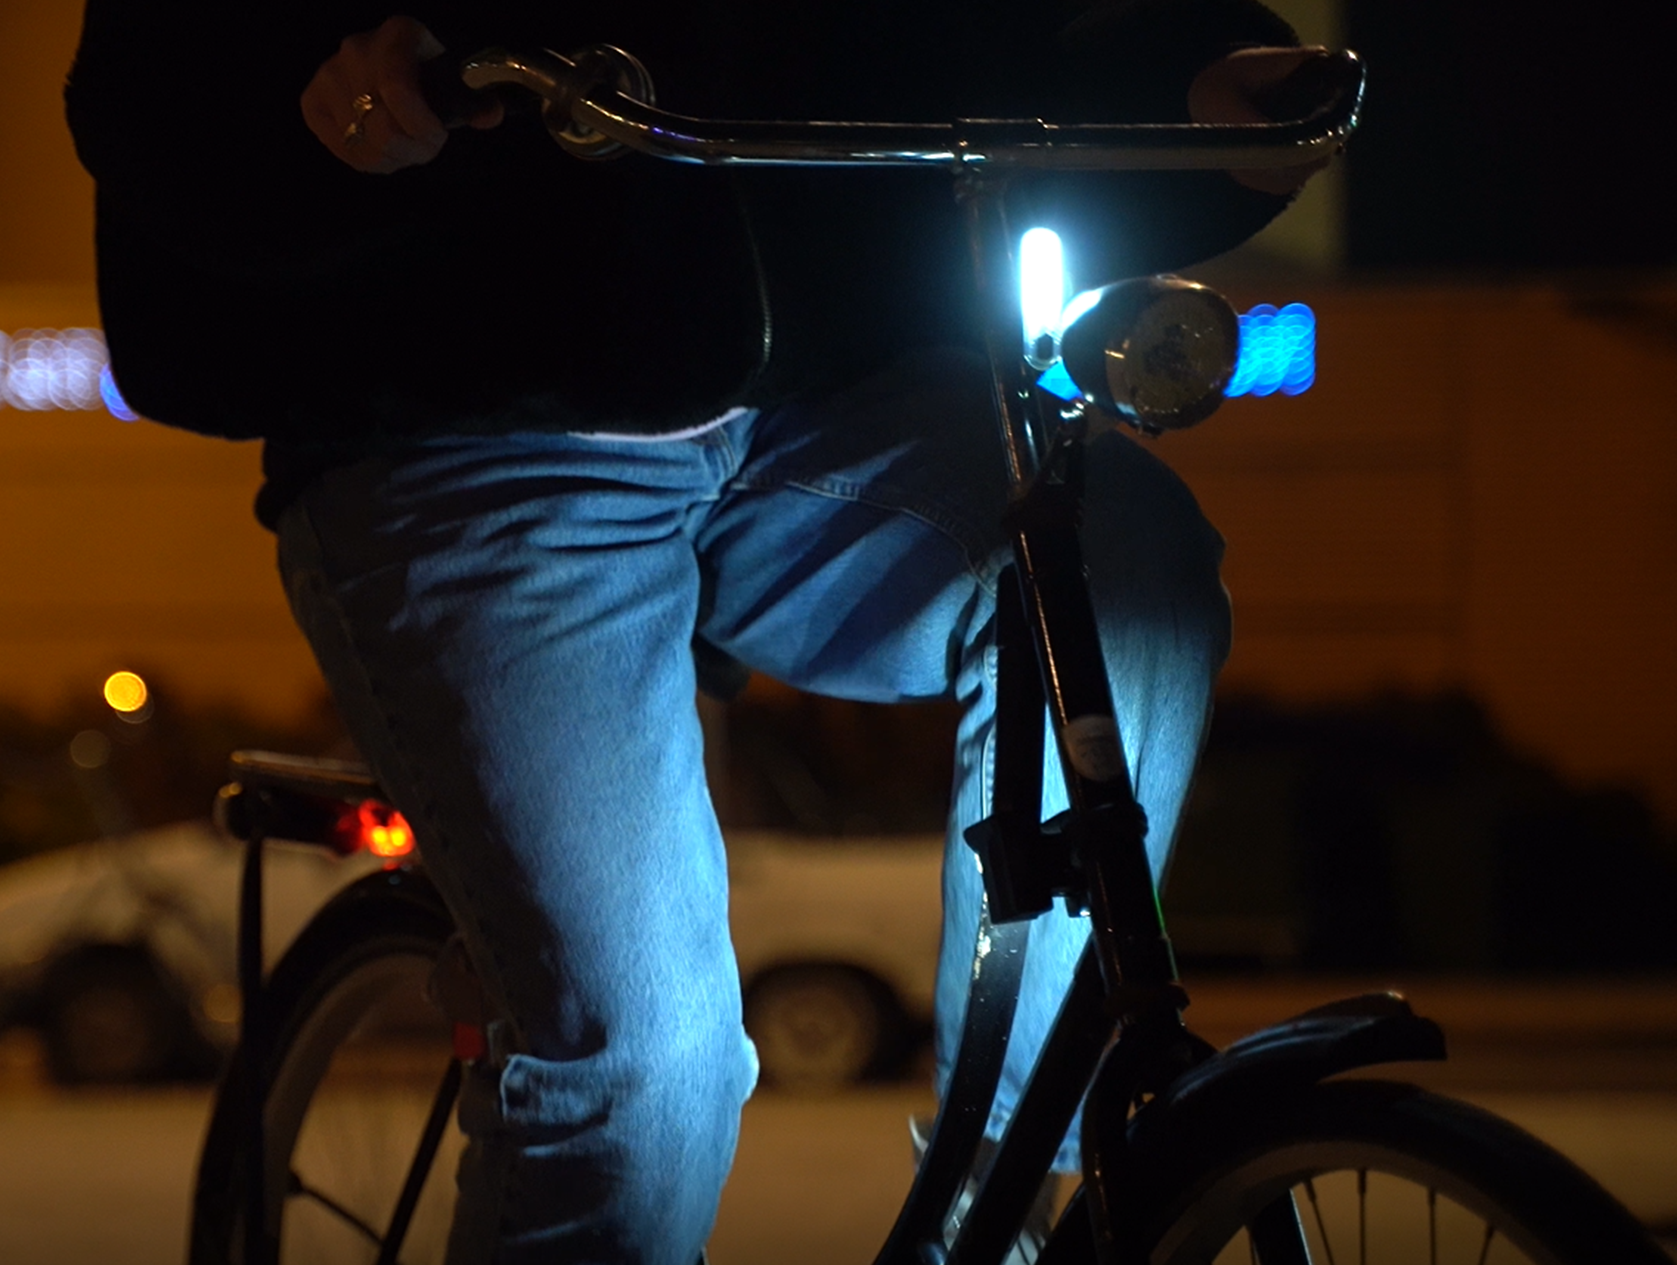 Startup Ziemi wil verkeersveiligheid vergroten met fietslichtje dat broekspijpen verlicht